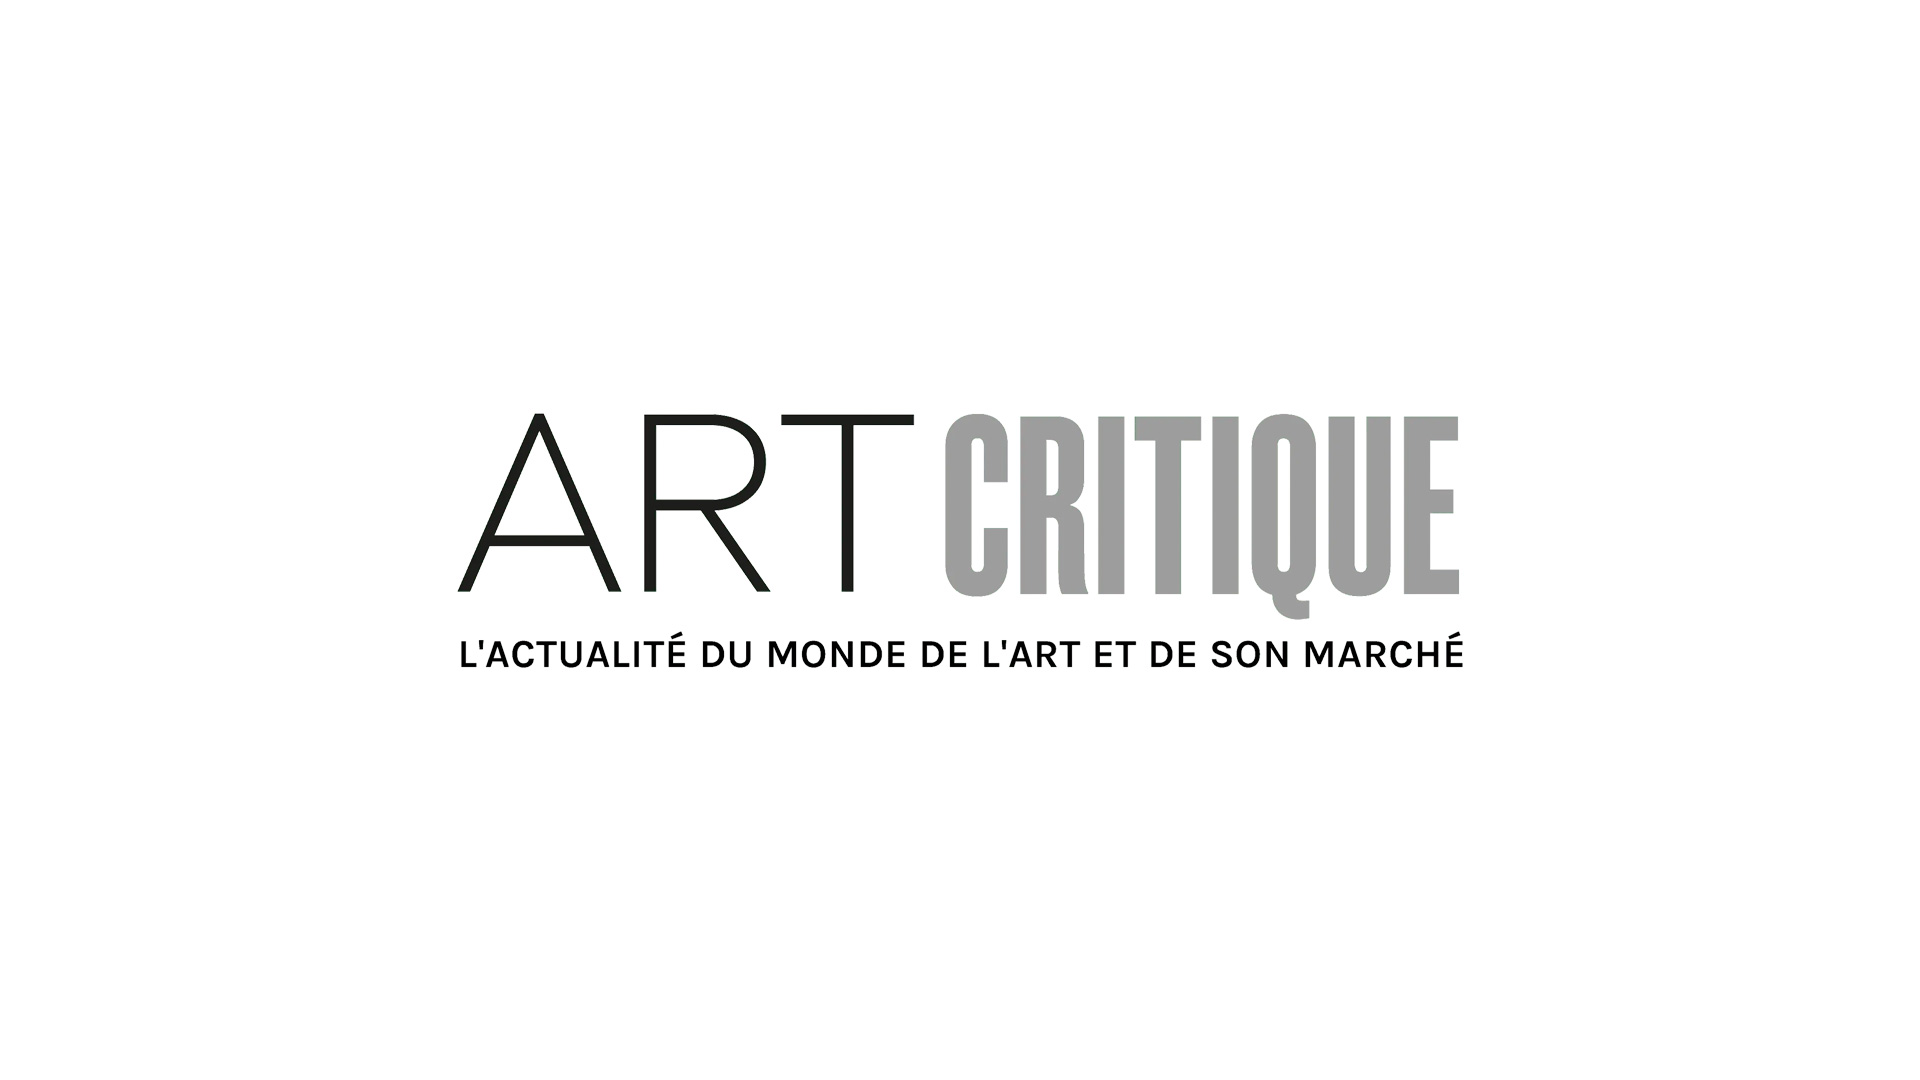 Le Centre Pompidou met en ligne ses expositions